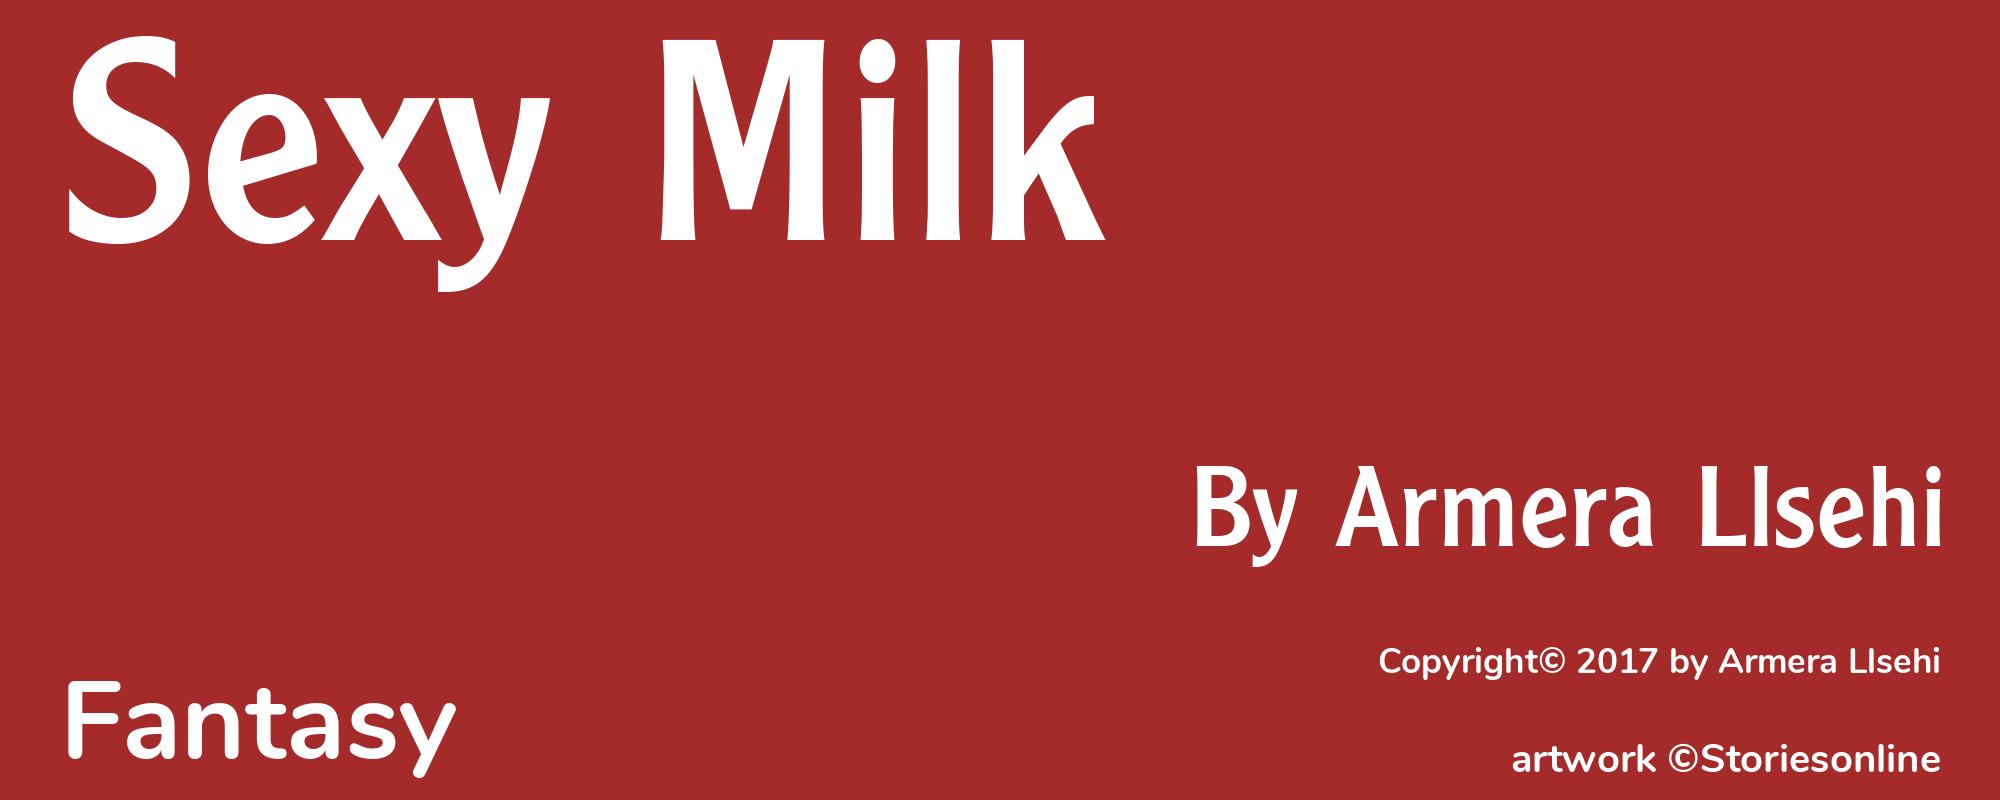 Sexy Milk - Cover